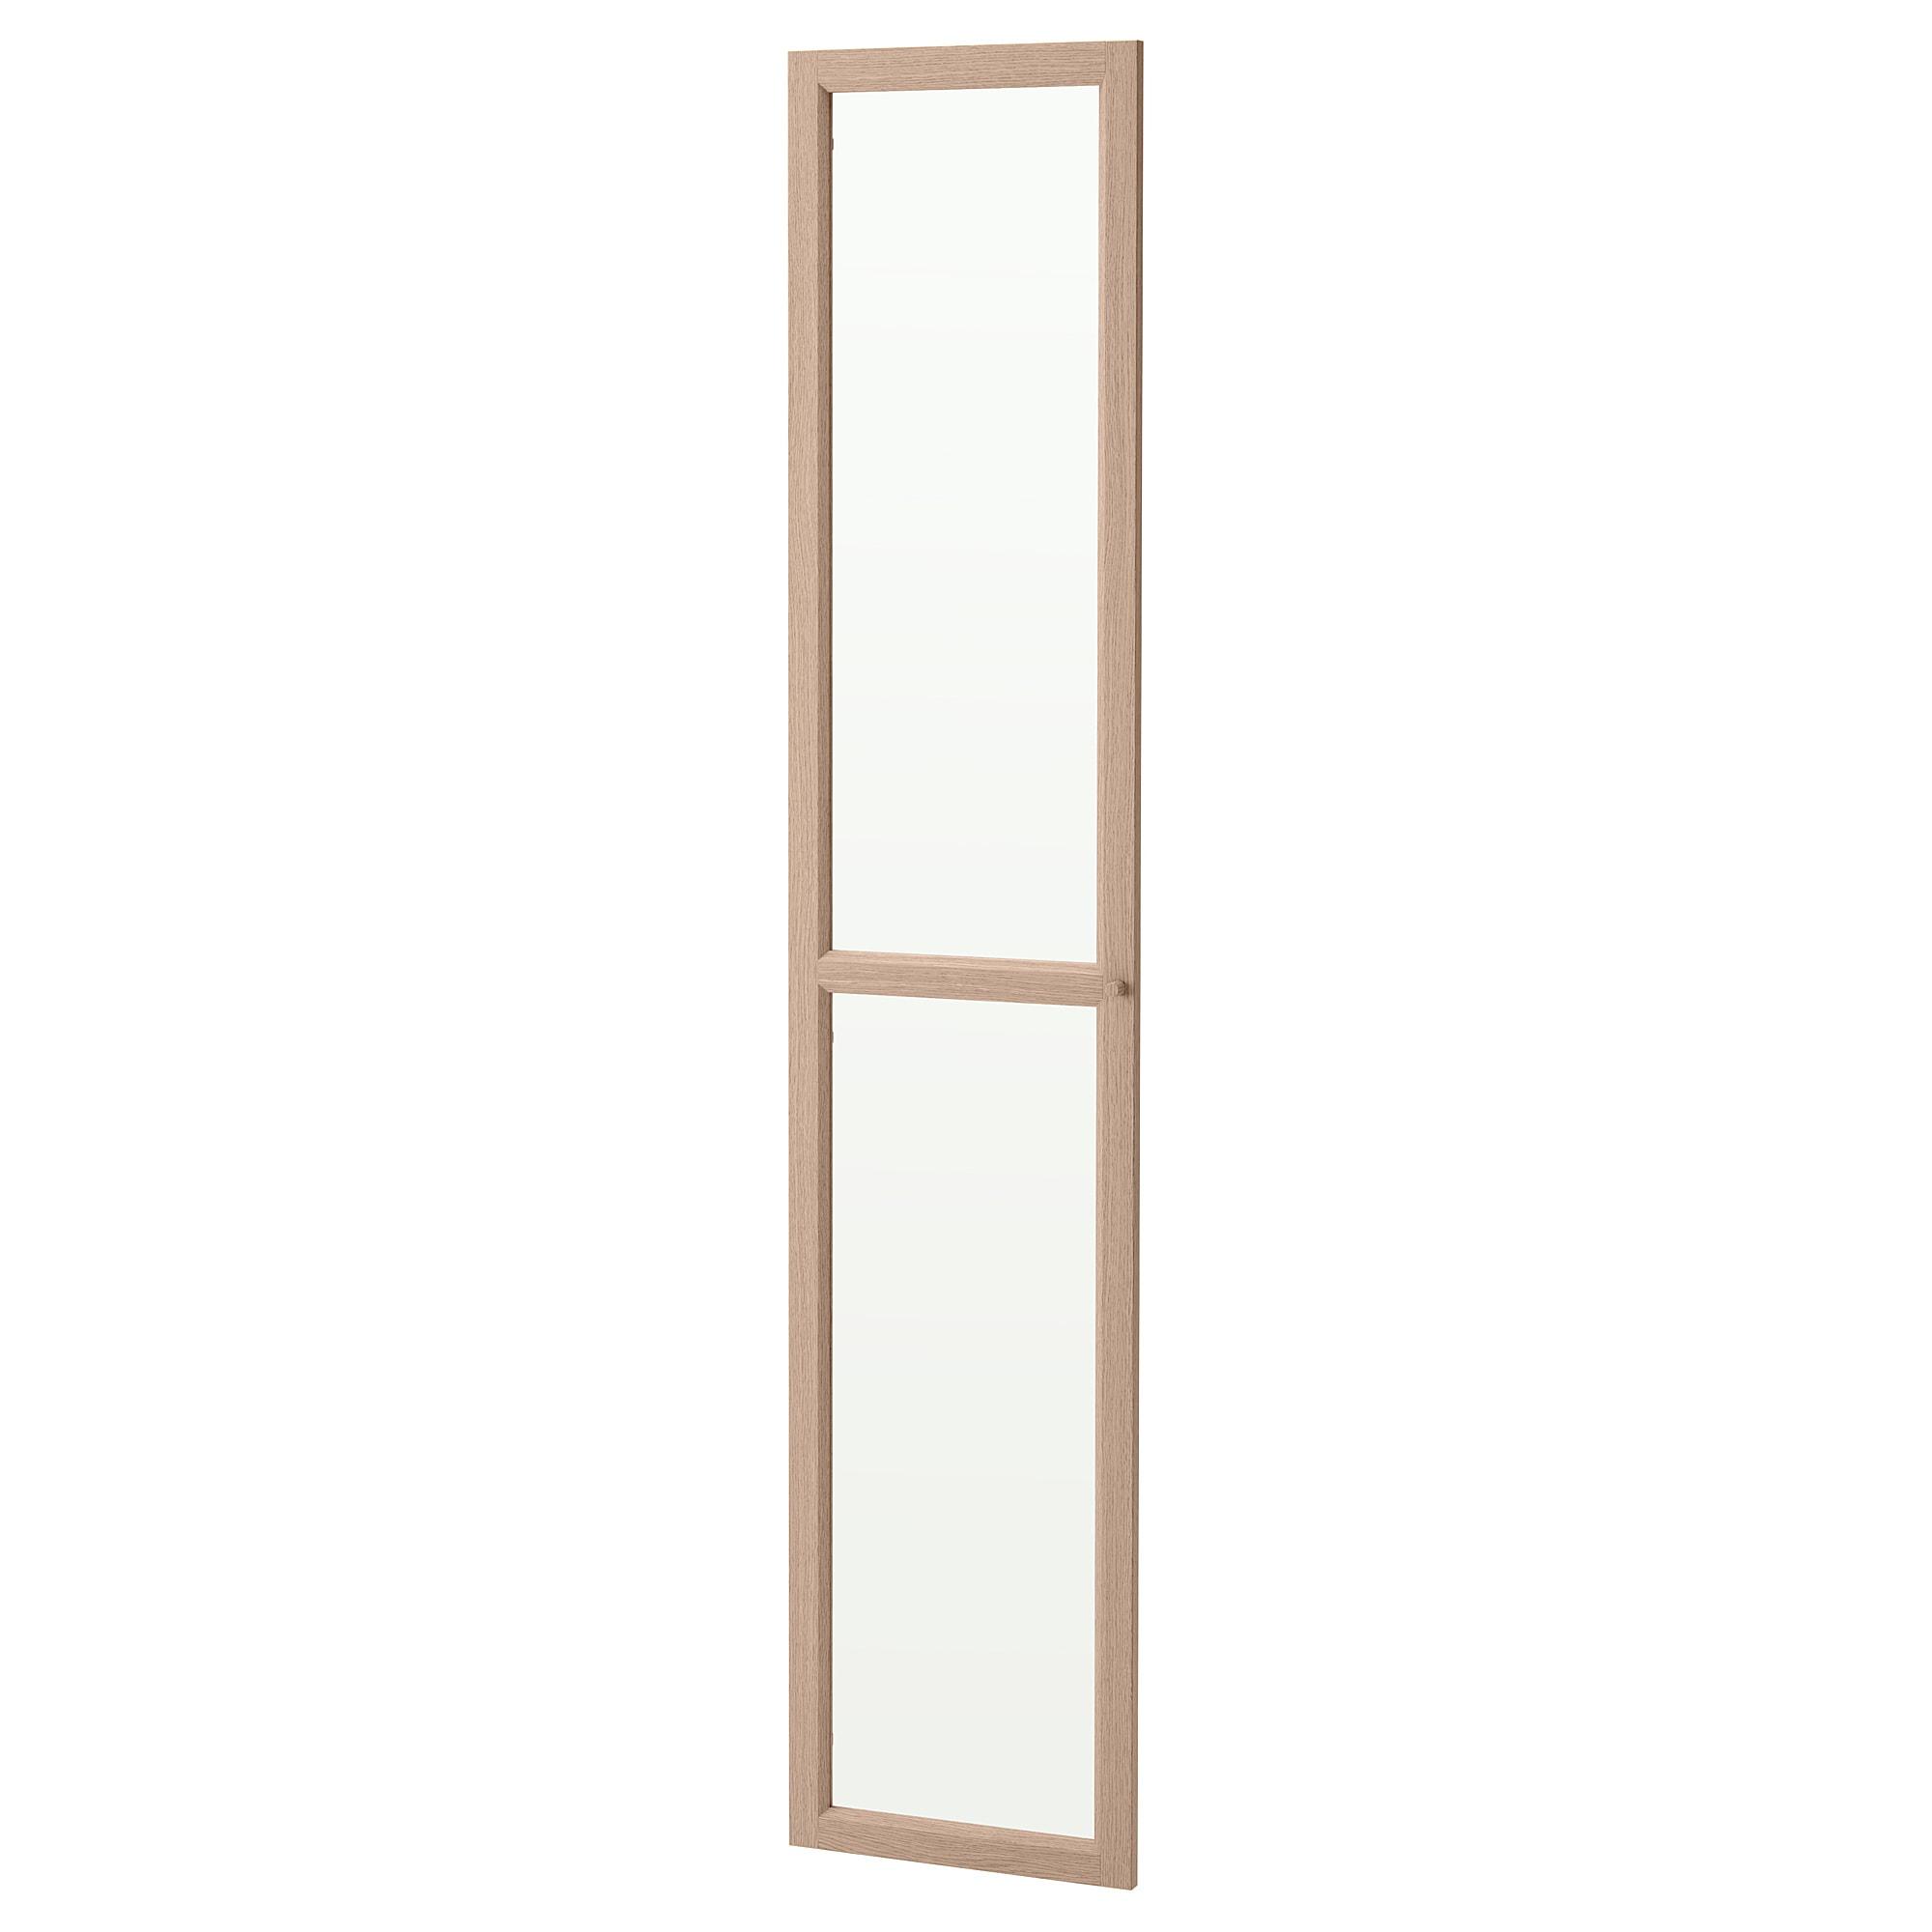 ИКЕА Скляні двері OXBERG - білий вітражний шпон дуба 40x192 см, 004.040.39